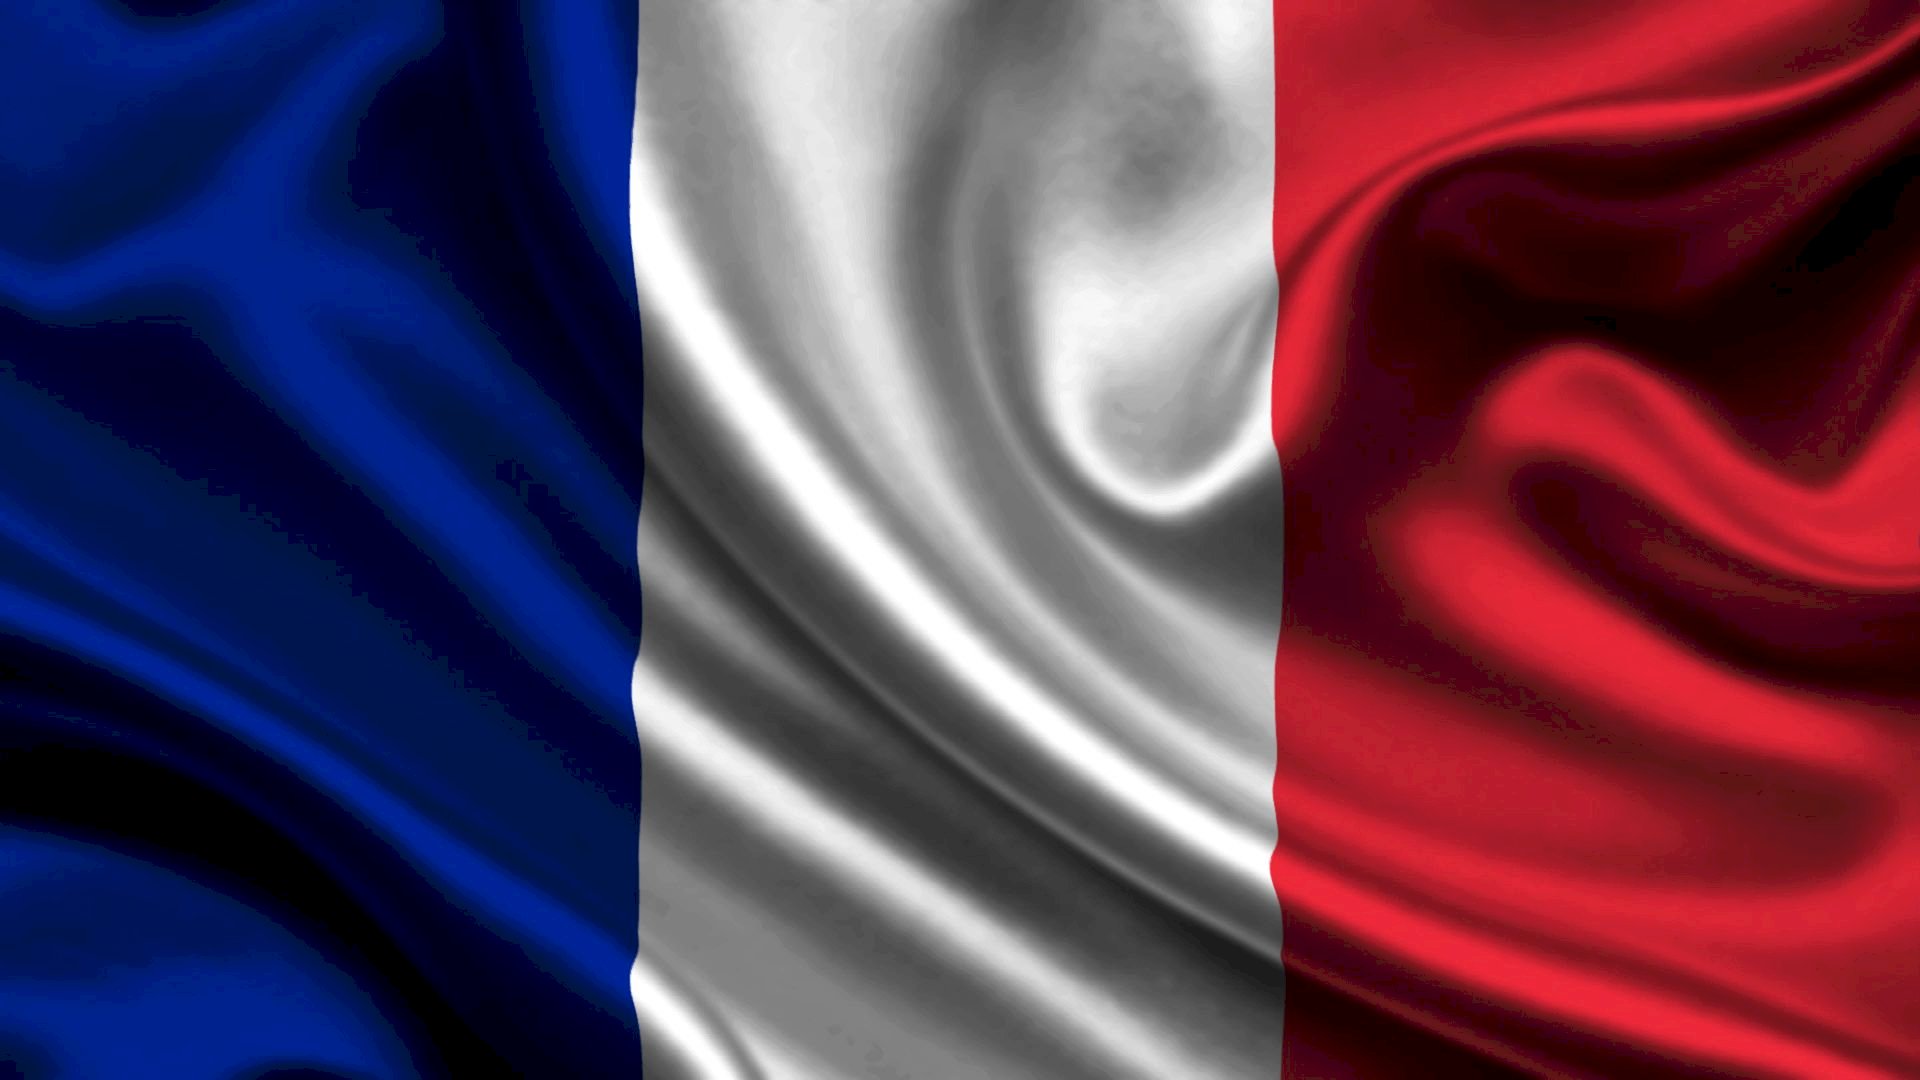 Hình ảnh cờ Pháp là những bức tranh tuyệt đẹp mô tả lại sự tuyệt vời của biểu tượng quốc gia Pháp. Từ những tấm lá cờ rực rỡ đến những bức tranh tuyệt đẹp về cảnh đồng quê, những hình ảnh này đã thổi bùng lên niềm tự hào và tình yêu đối với đất nước Pháp xinh đẹp. Hãy chiêm ngưỡng những hình ảnh này và cảm nhận tình yêu đối với đất nước của chúng ta.